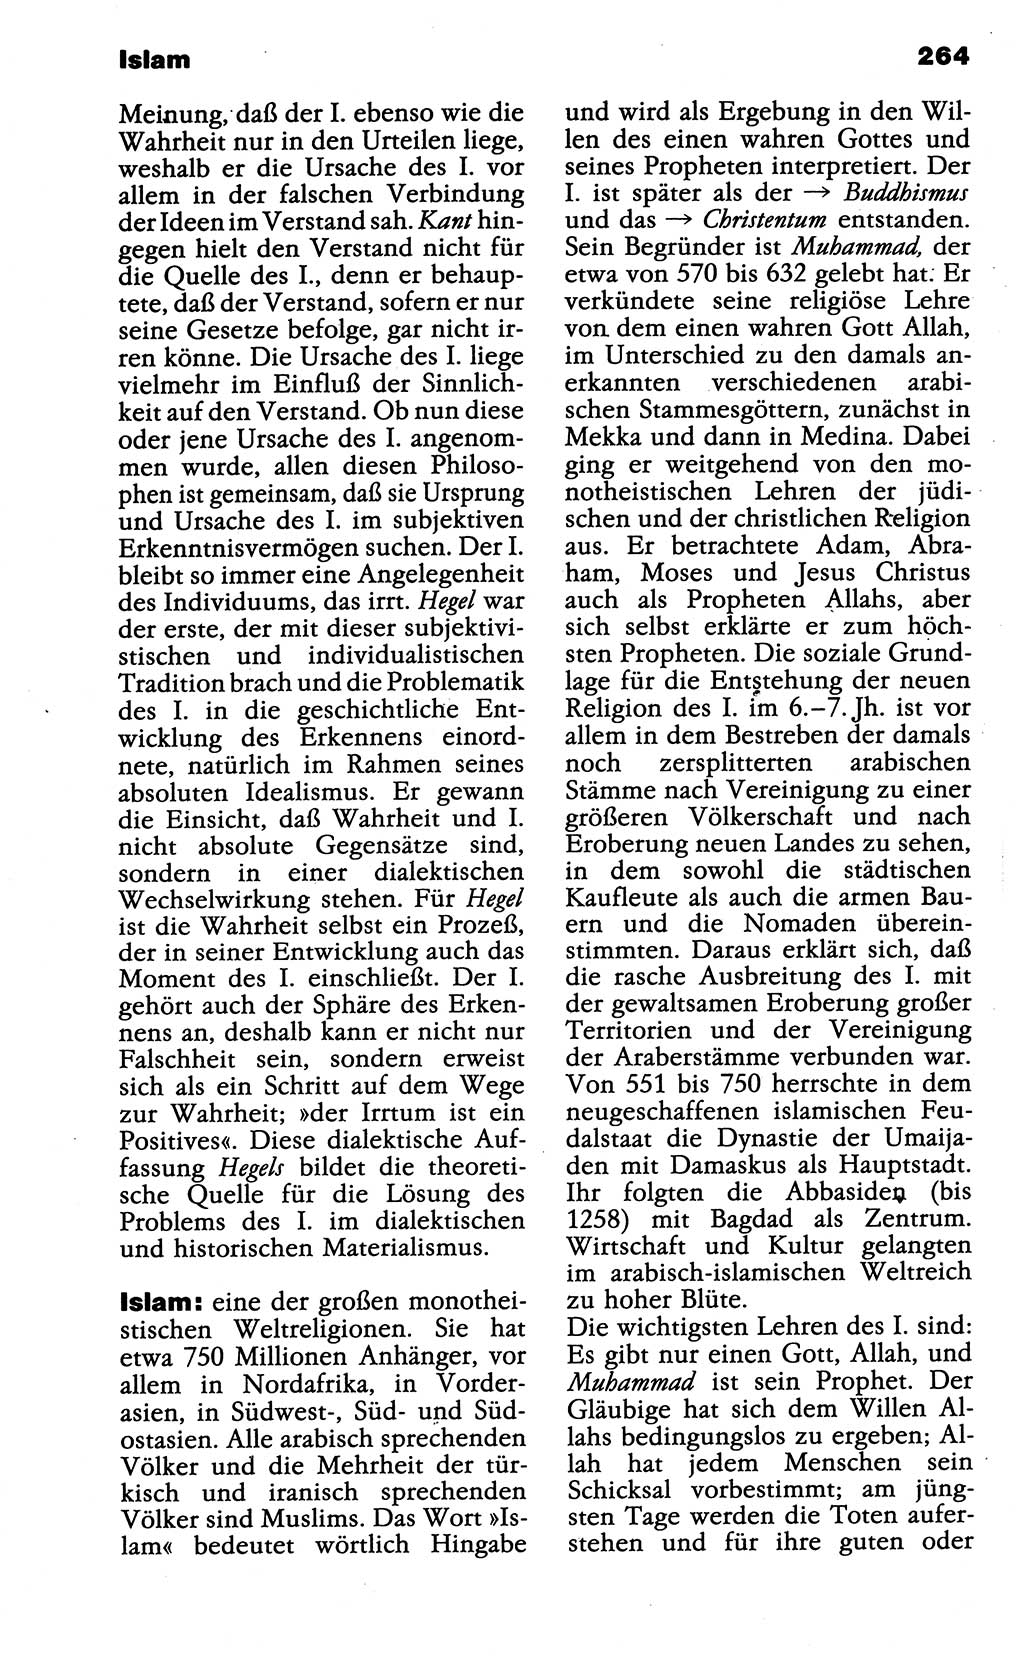 Wörterbuch der marxistisch-leninistischen Philosophie [Deutsche Demokratische Republik (DDR)] 1985, Seite 264 (Wb. ML Phil. DDR 1985, S. 264)